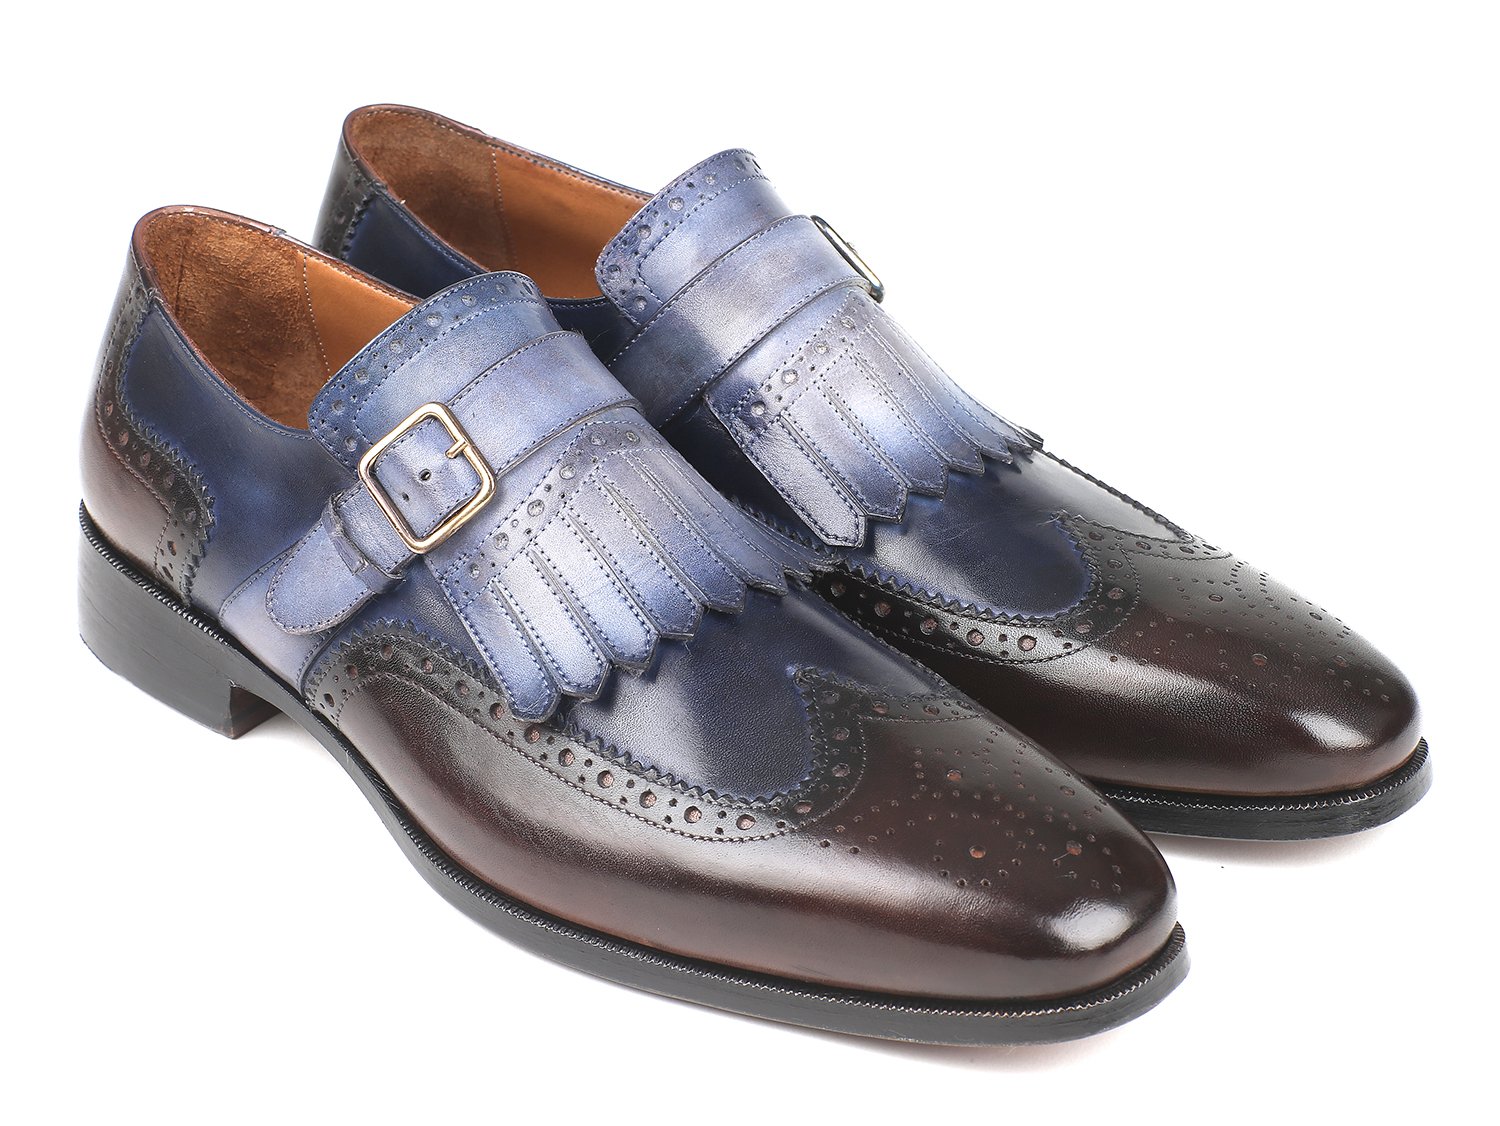 Paul Parkman "52SL79" Blue / Brown Kiltie Monkstraps Loafer Shoes.